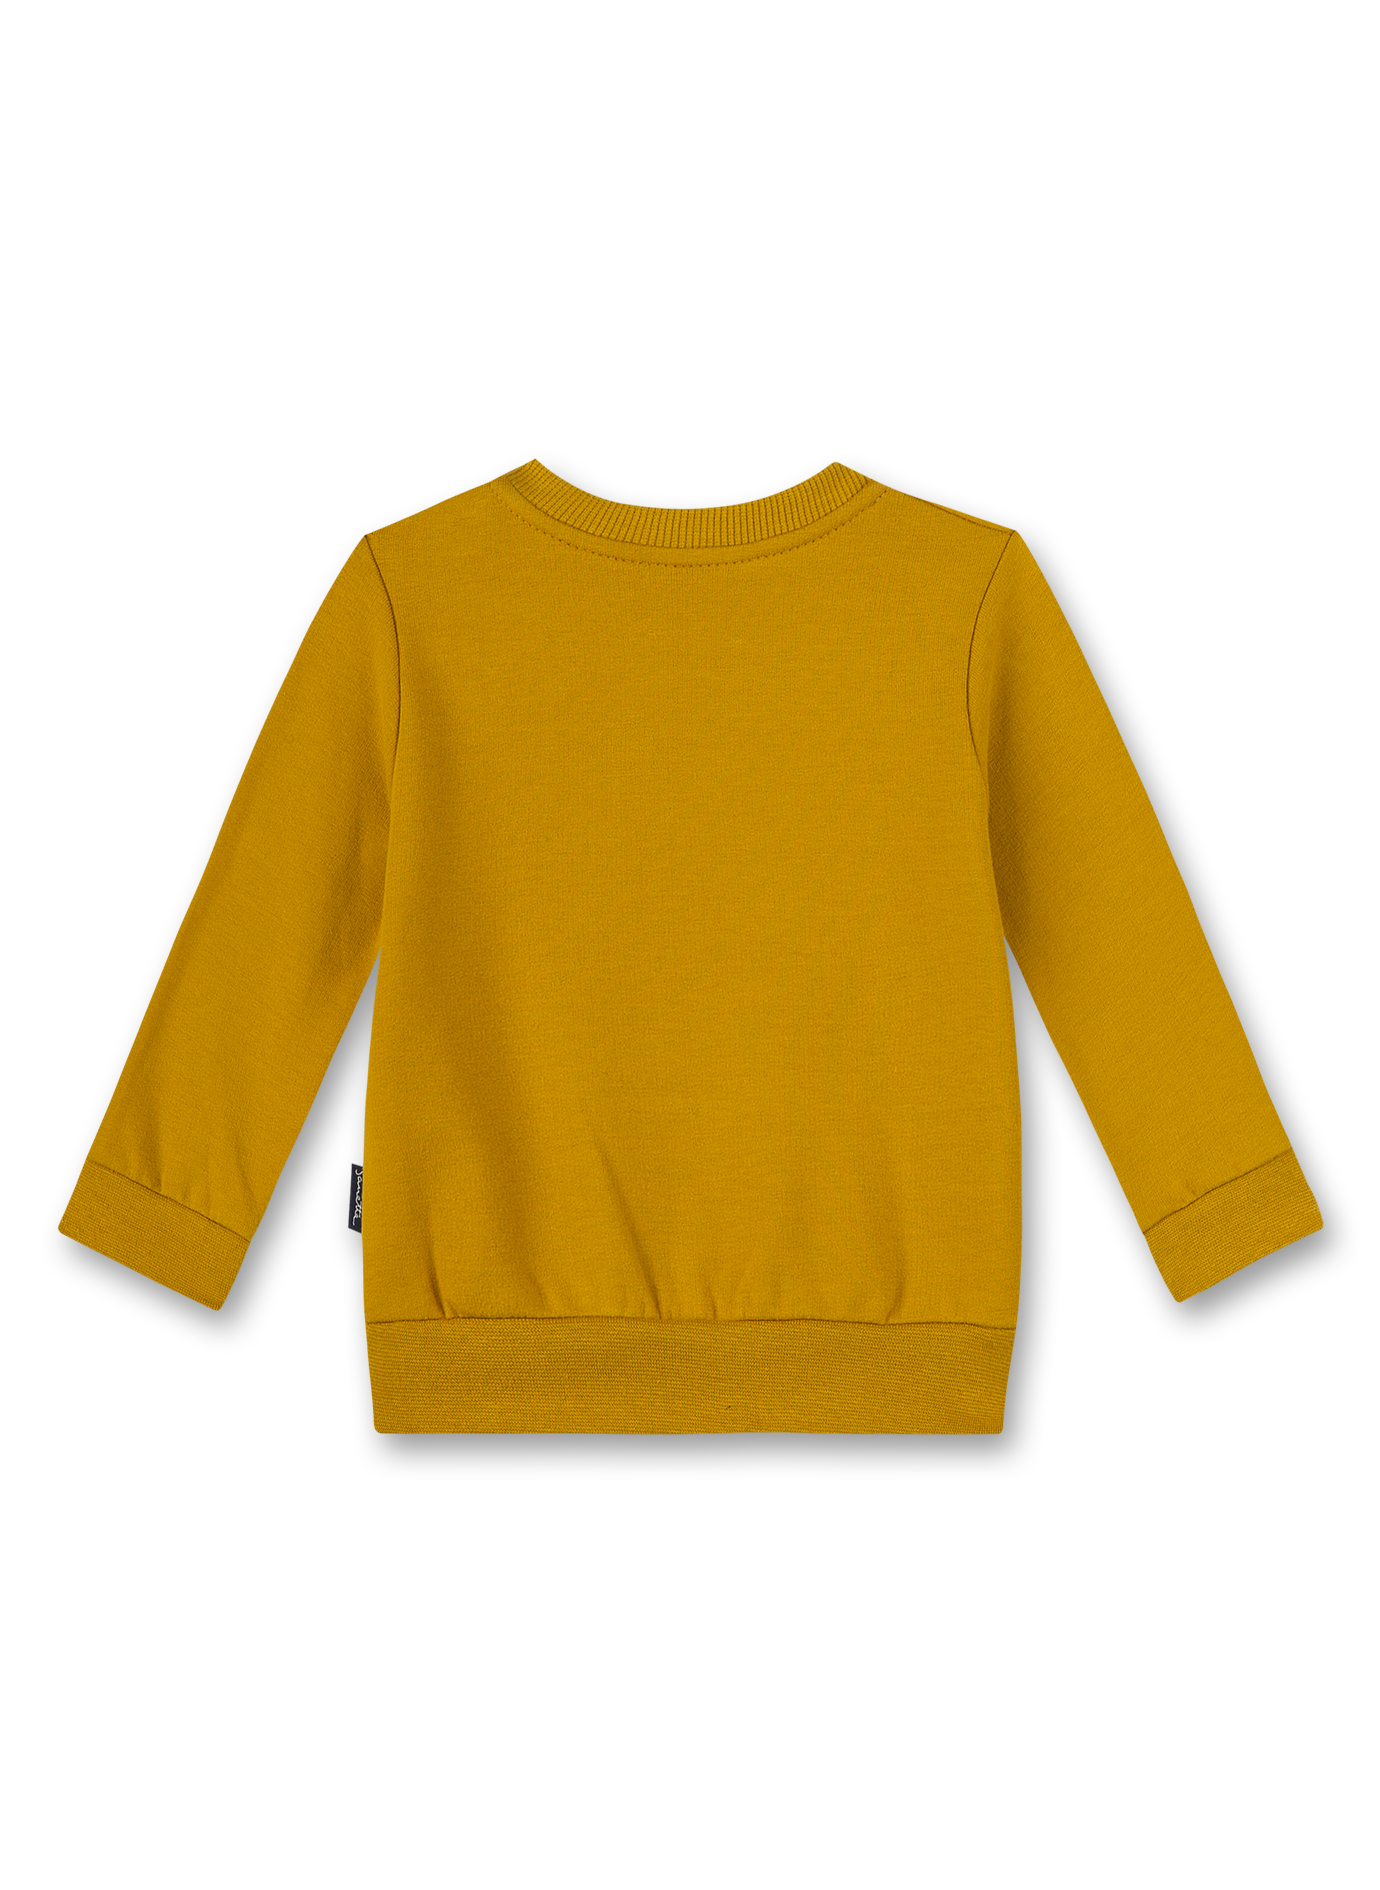 Jungen-Sweatshirt Gelb Turtle